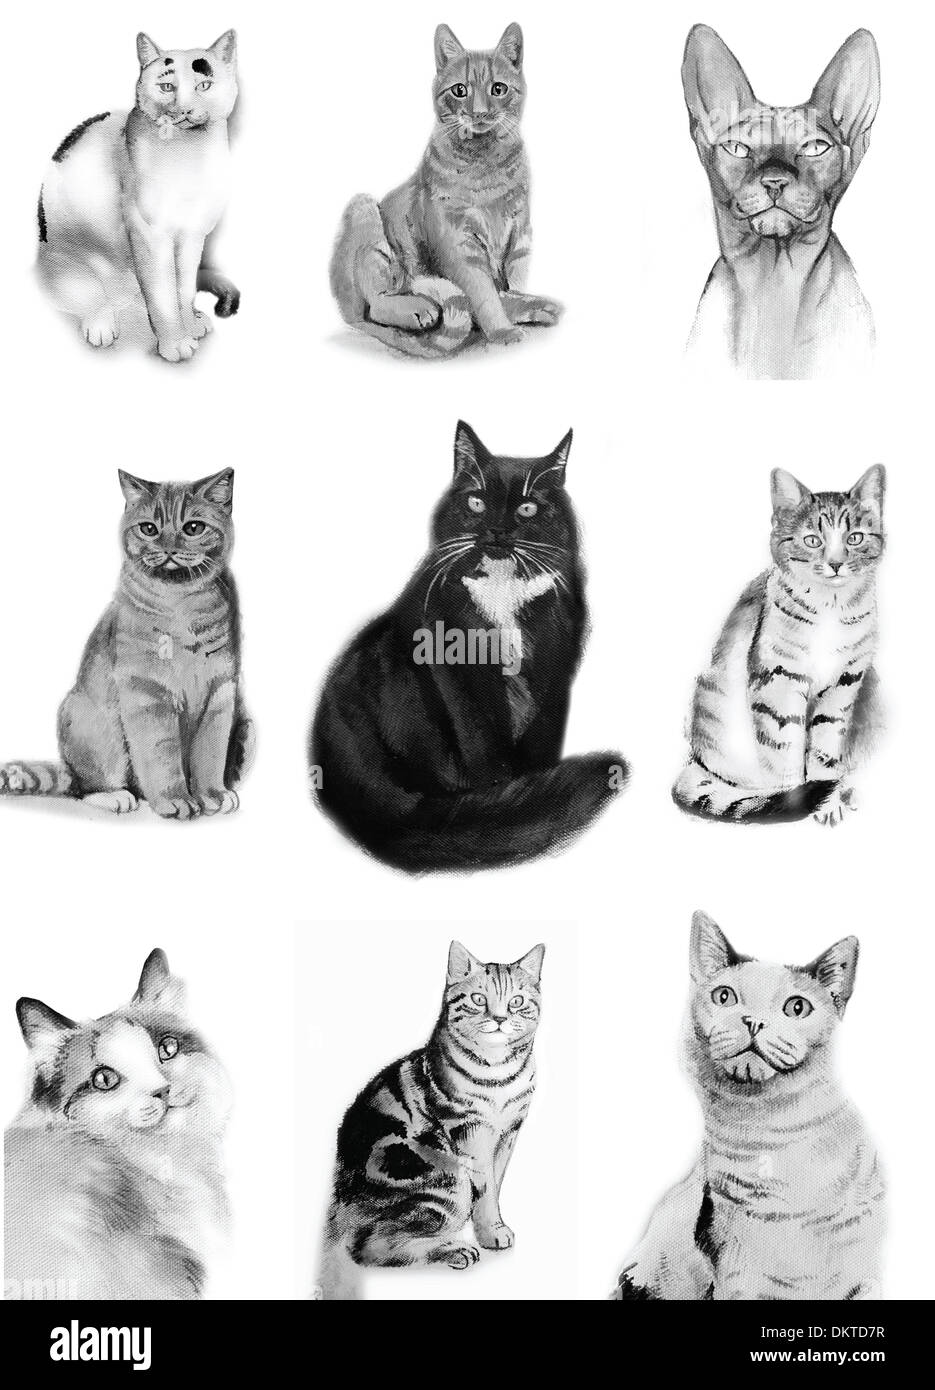 9 chat chats aquarelle croquis divers noir et blanc sur fond blanc chat assis chat pedigree découpe européenne cat britannique Banque D'Images